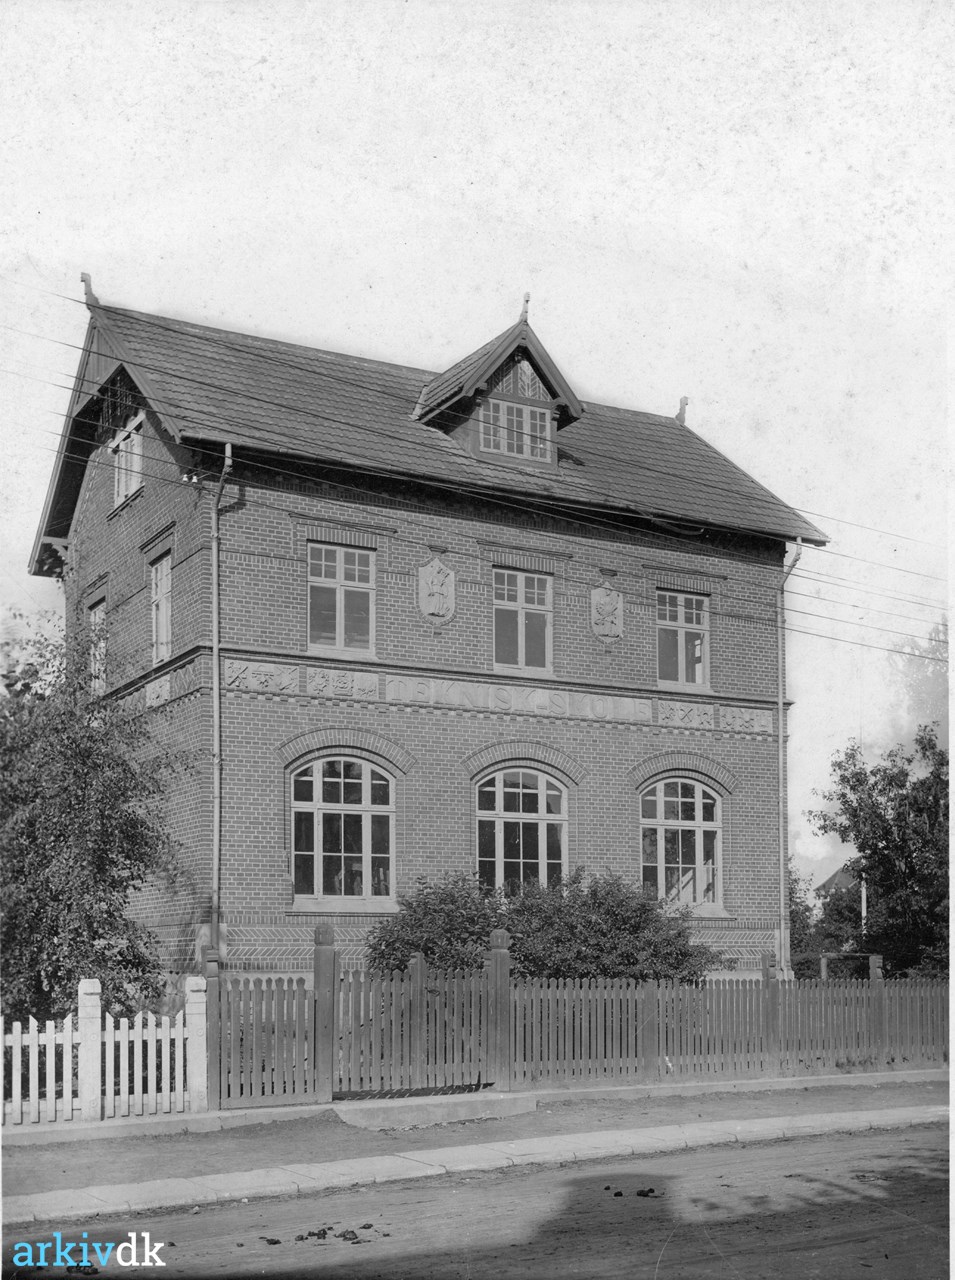 fremsætte deltage Mappe arkiv.dk | Algade 74, "Teknisk Skole", ca. 1920. Ringe Tekniske Skole.